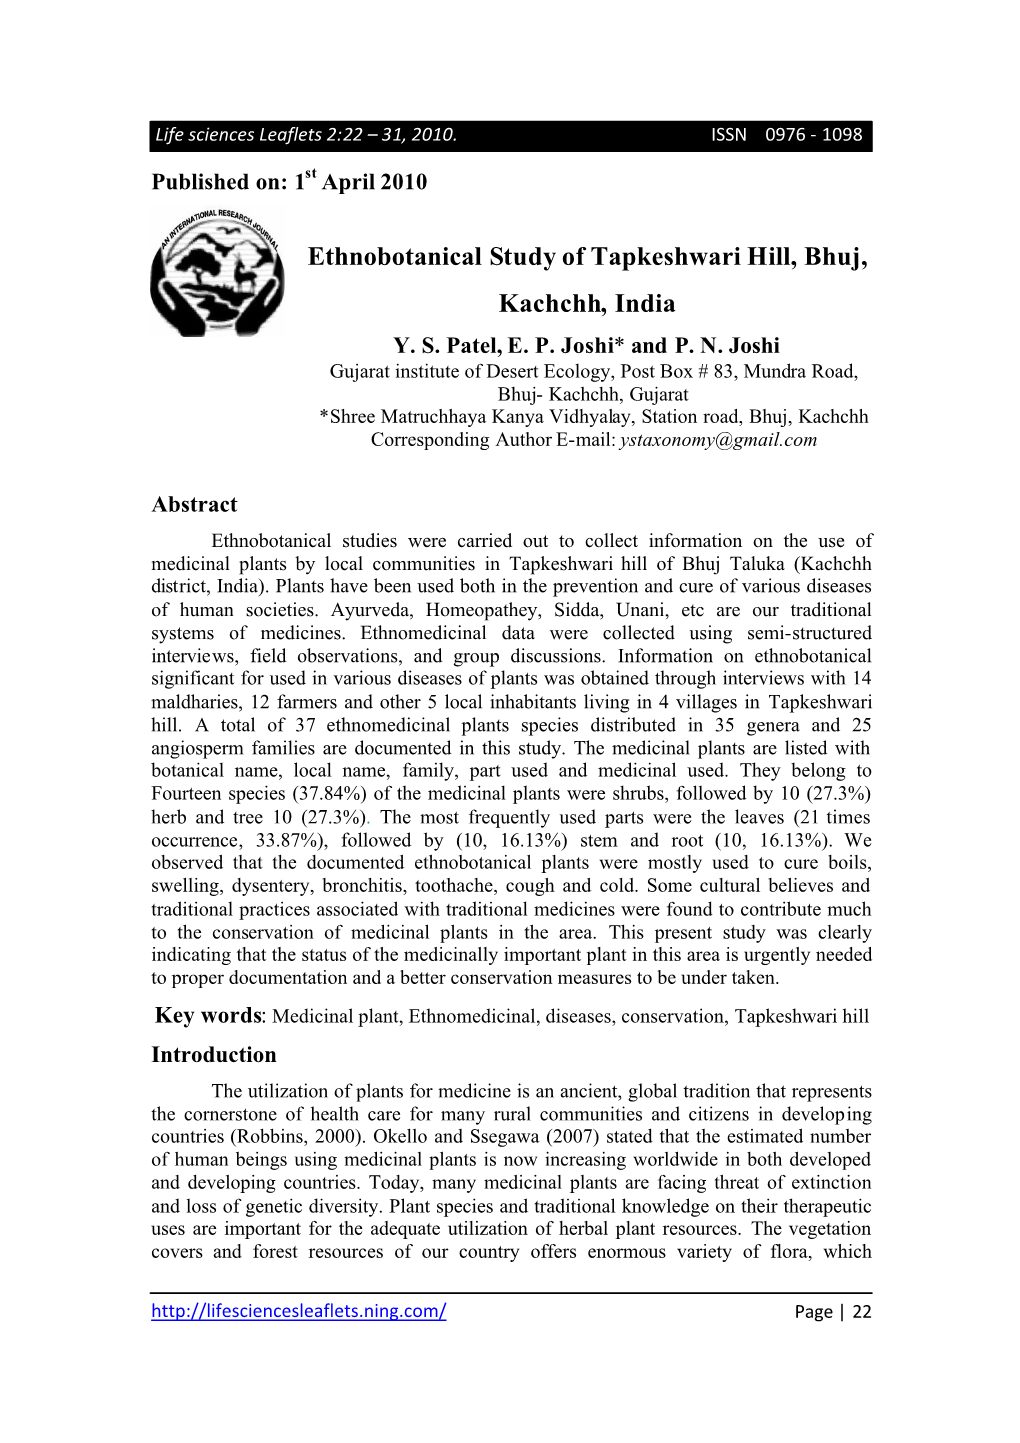 Ethnobotanical Study of Tapkeshwari Hill, Bhuj, Kachchh, India Y